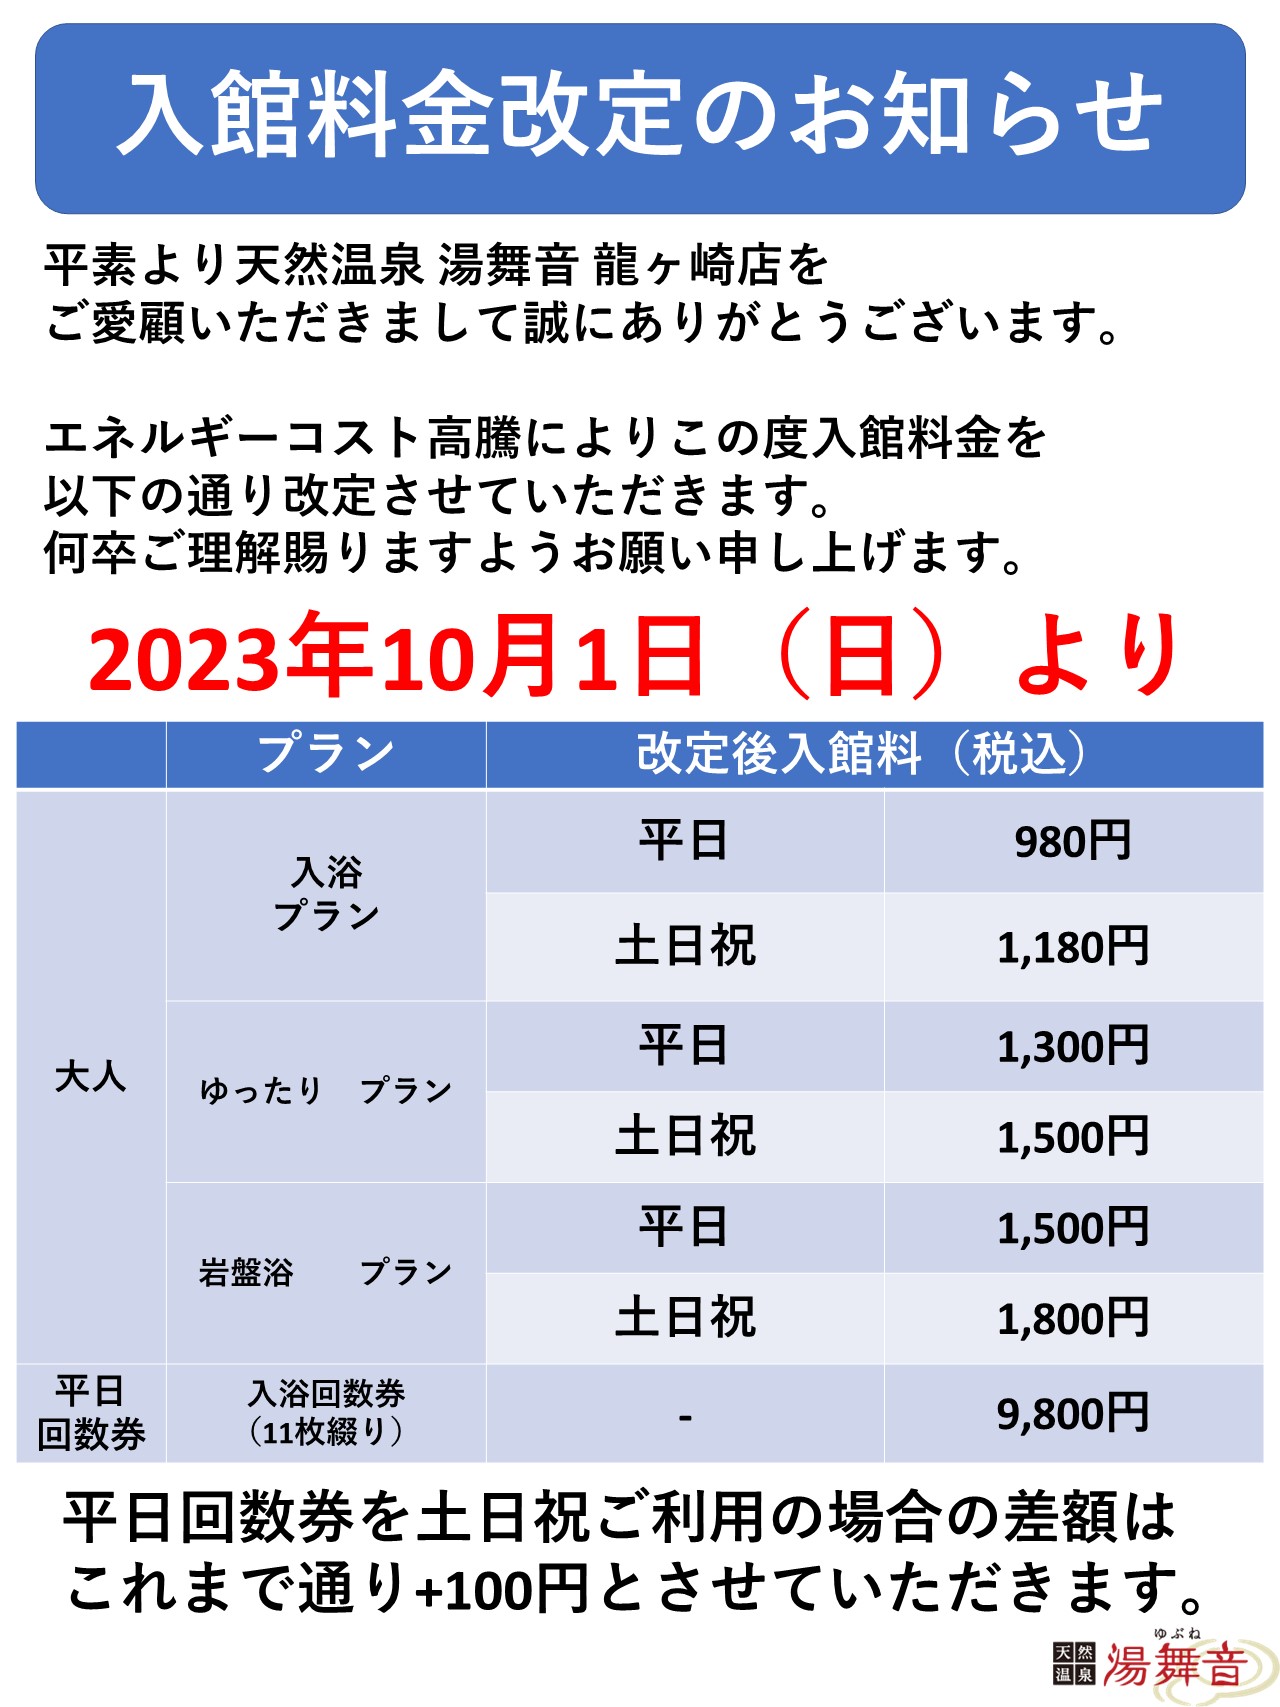 10月1日～入館料金改定のお知らせ